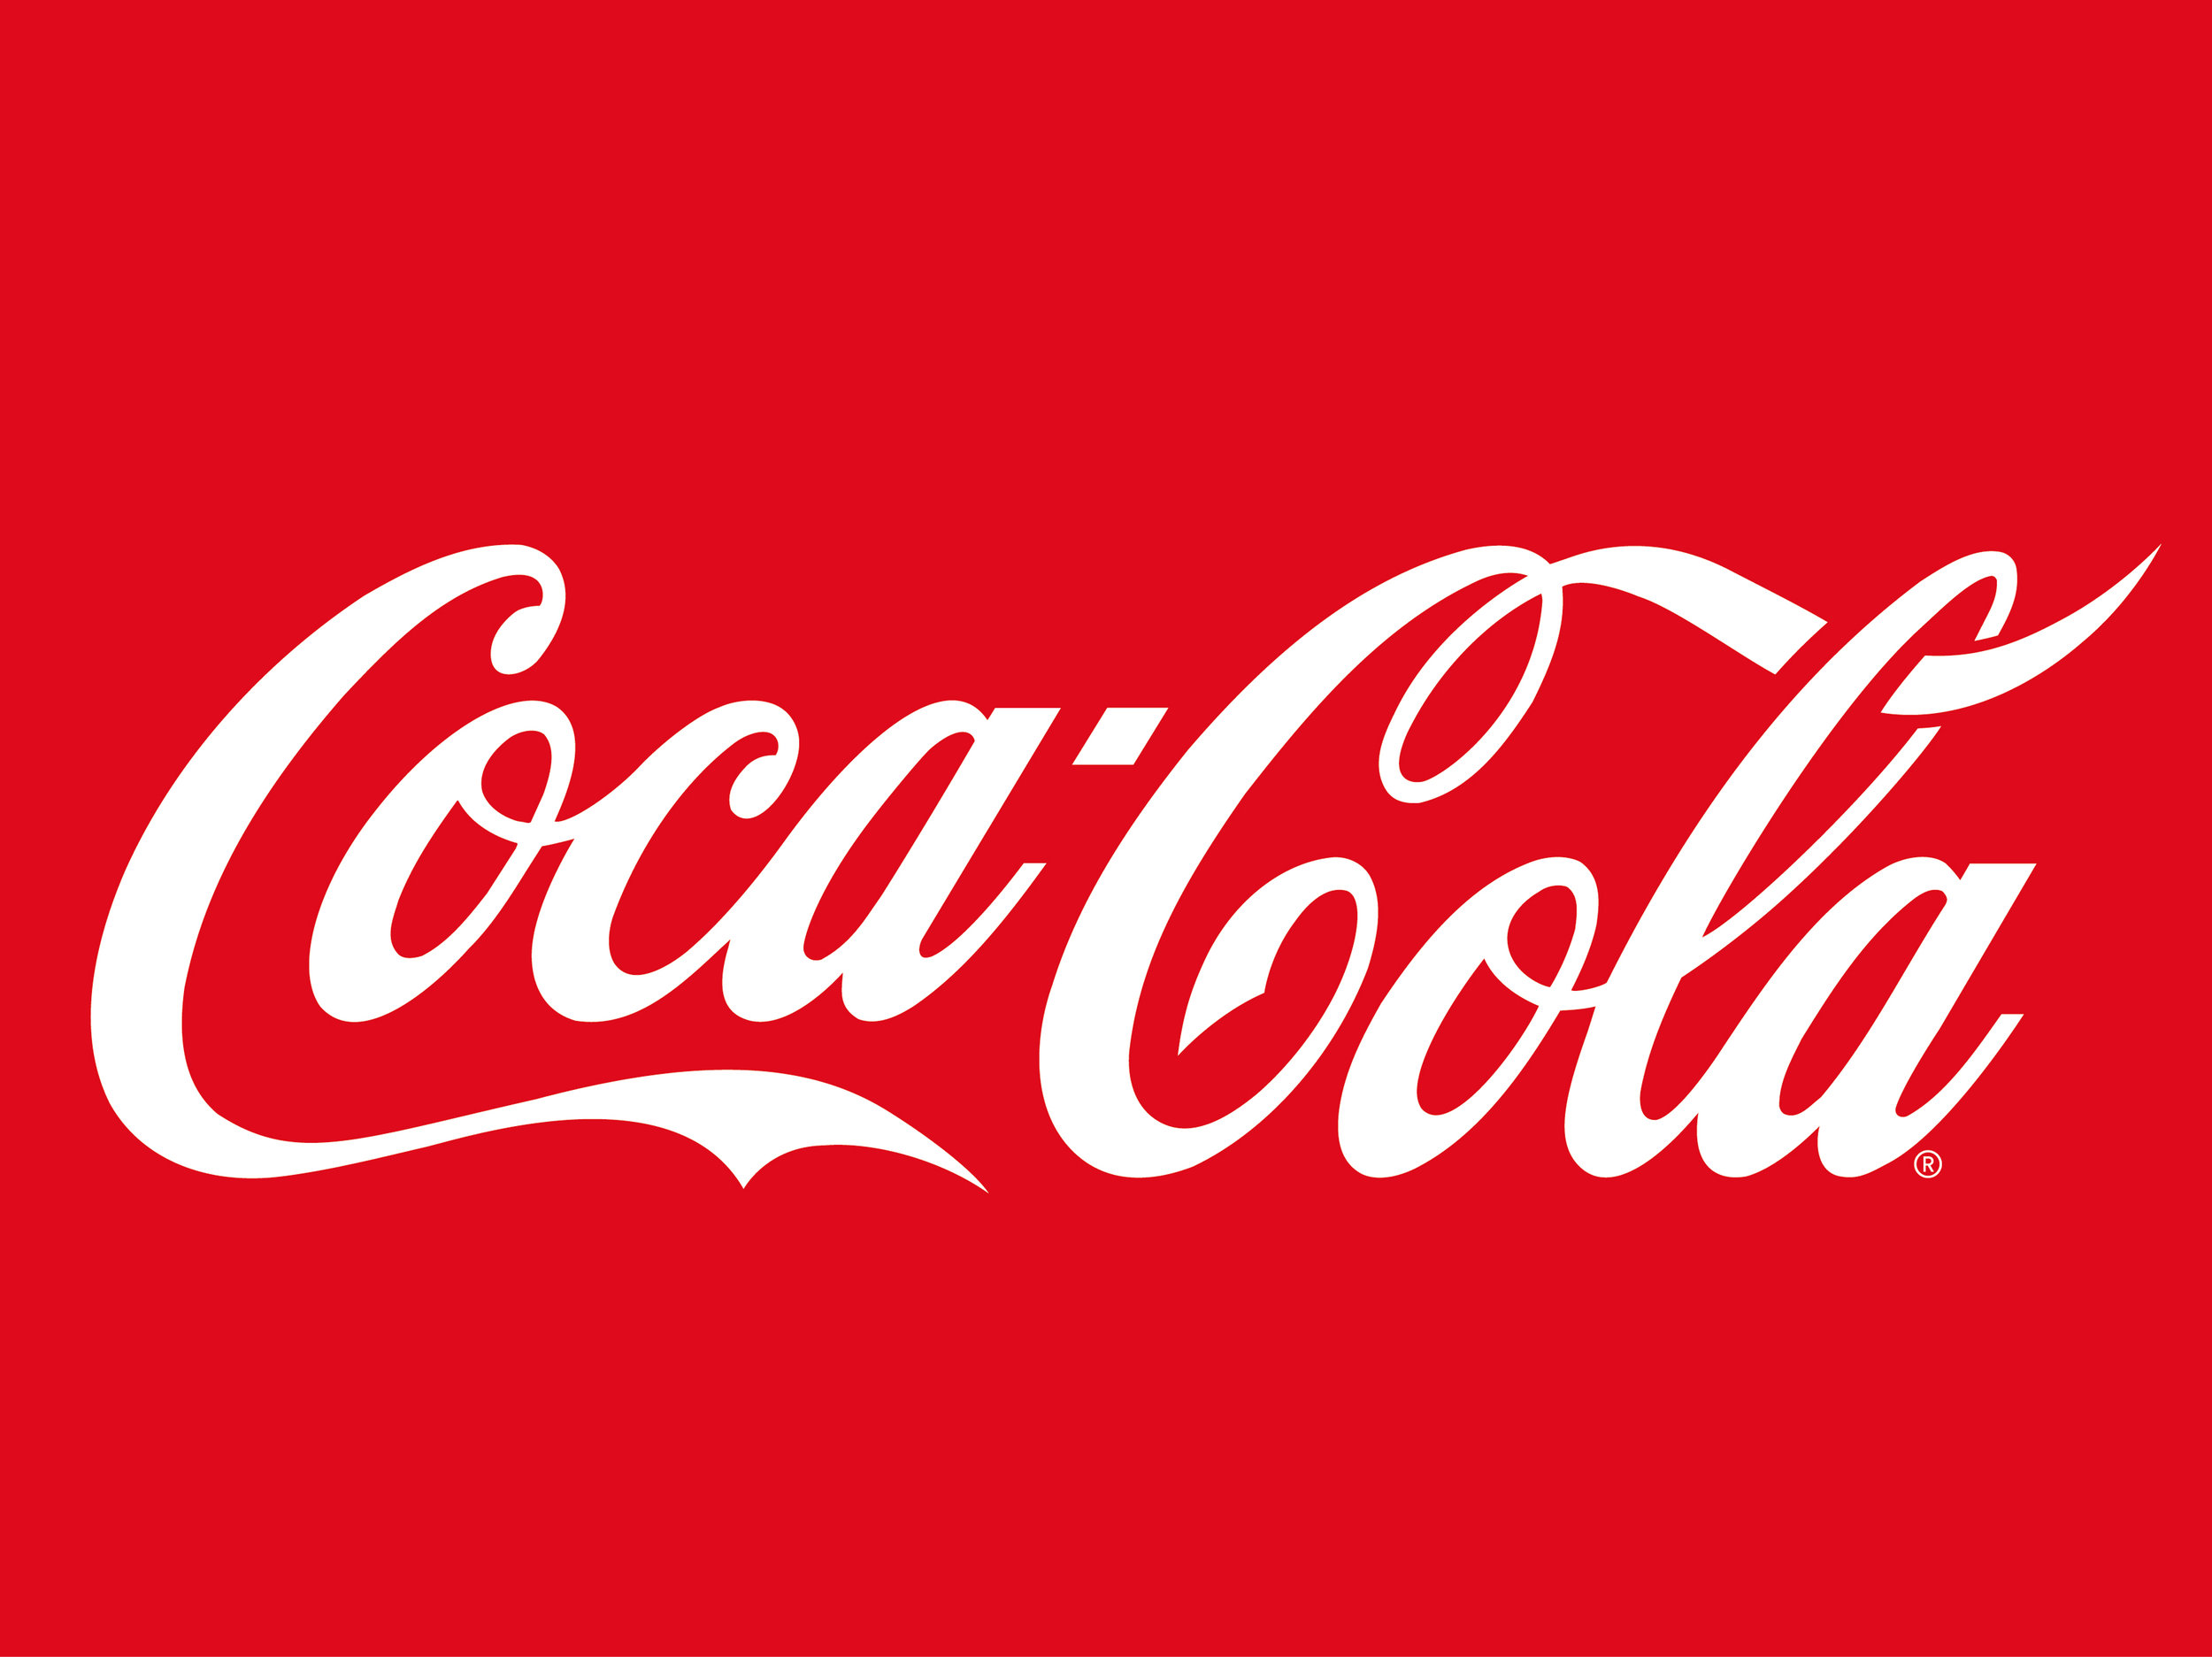 CocaCola1.jpg